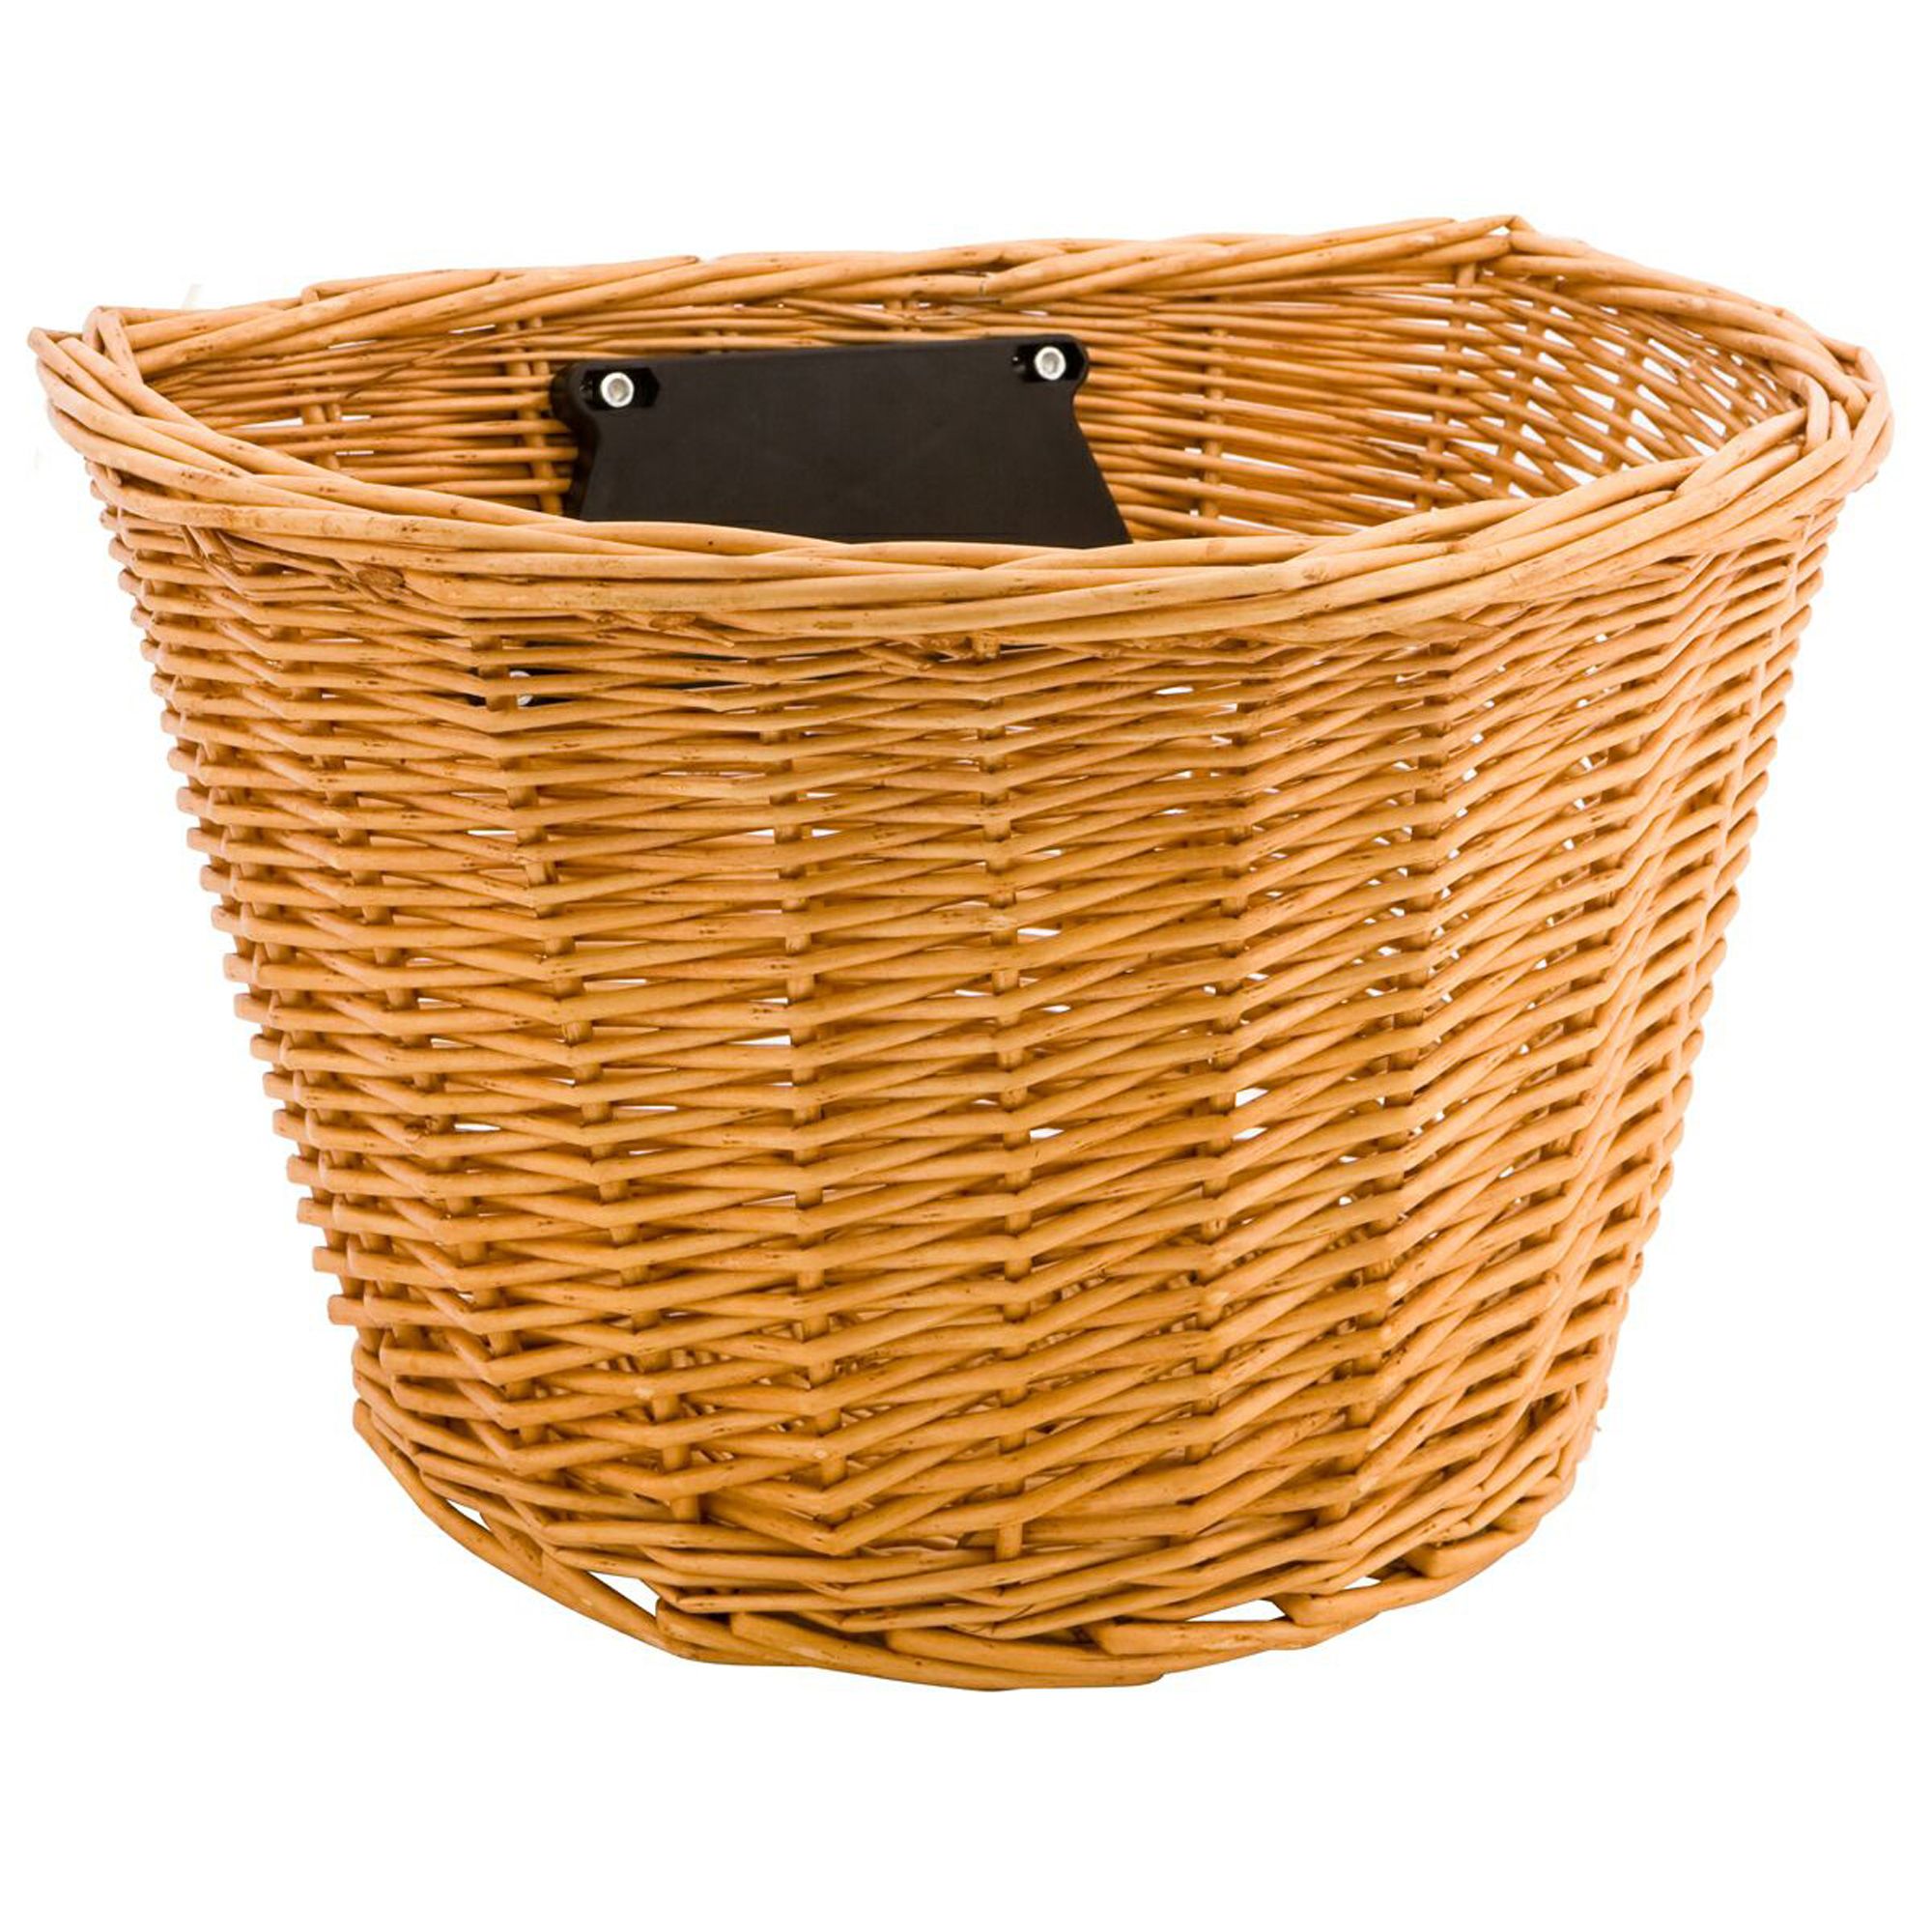 schwinn bike accessories basket